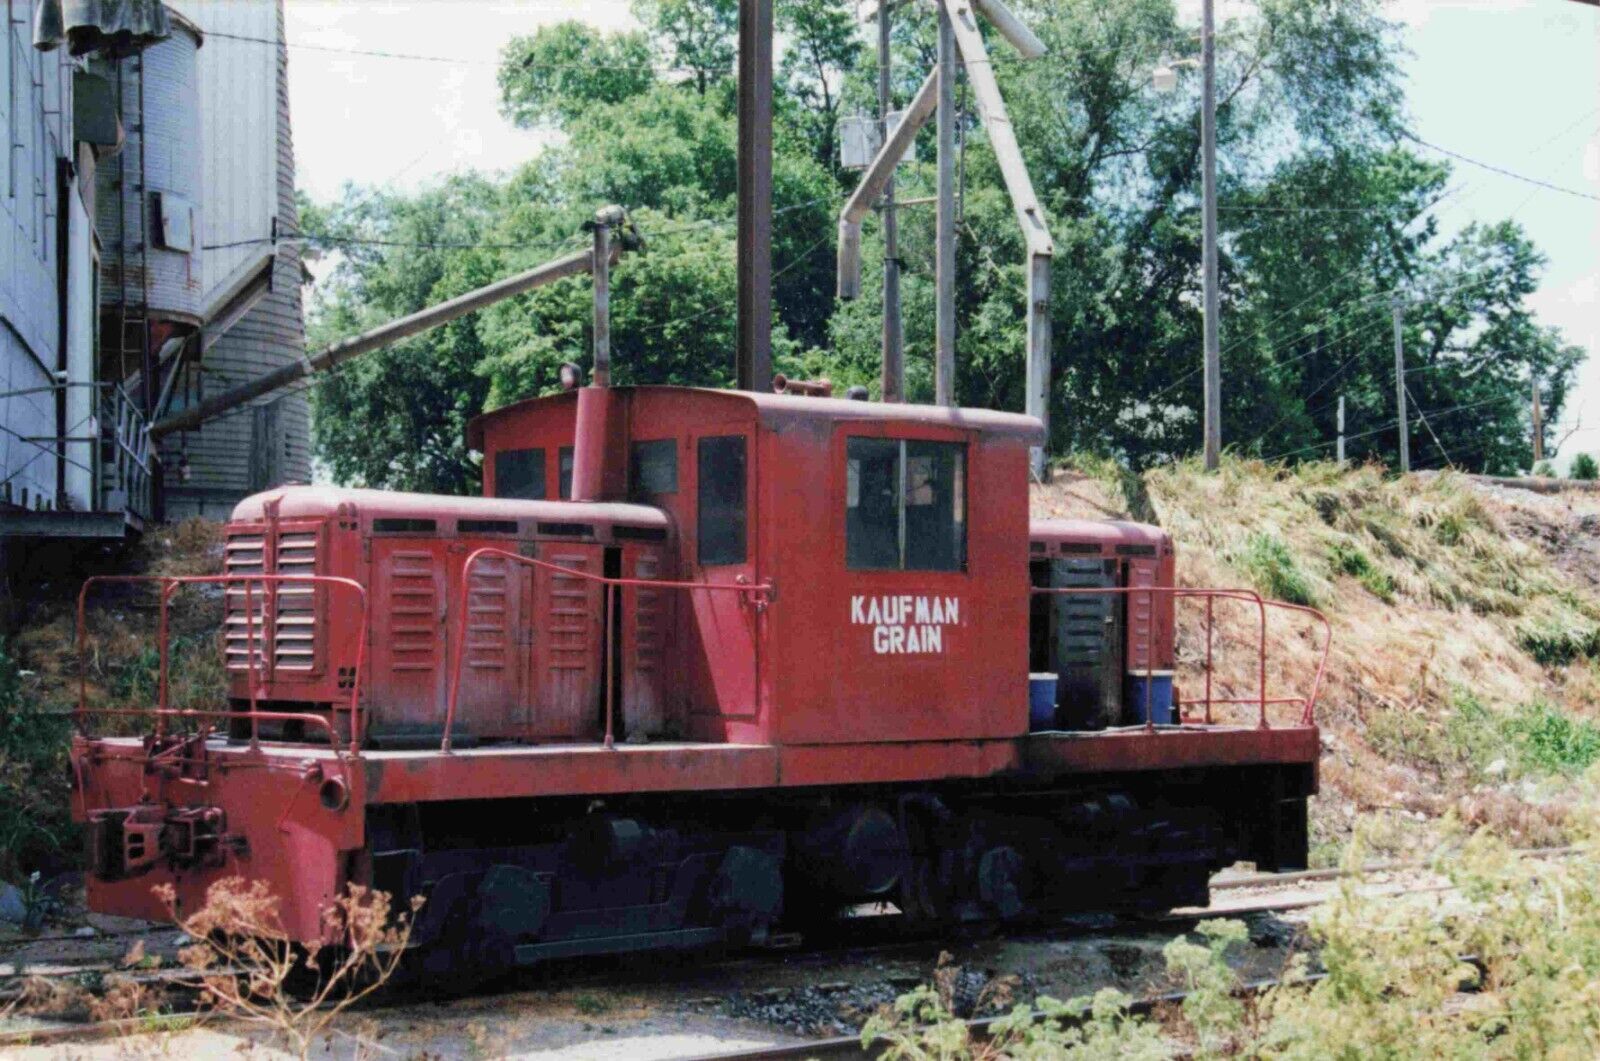 Kaufman Grain Rossville Illinois Whitcomb 45 Ton Switcher Train Photo 4X6 #311